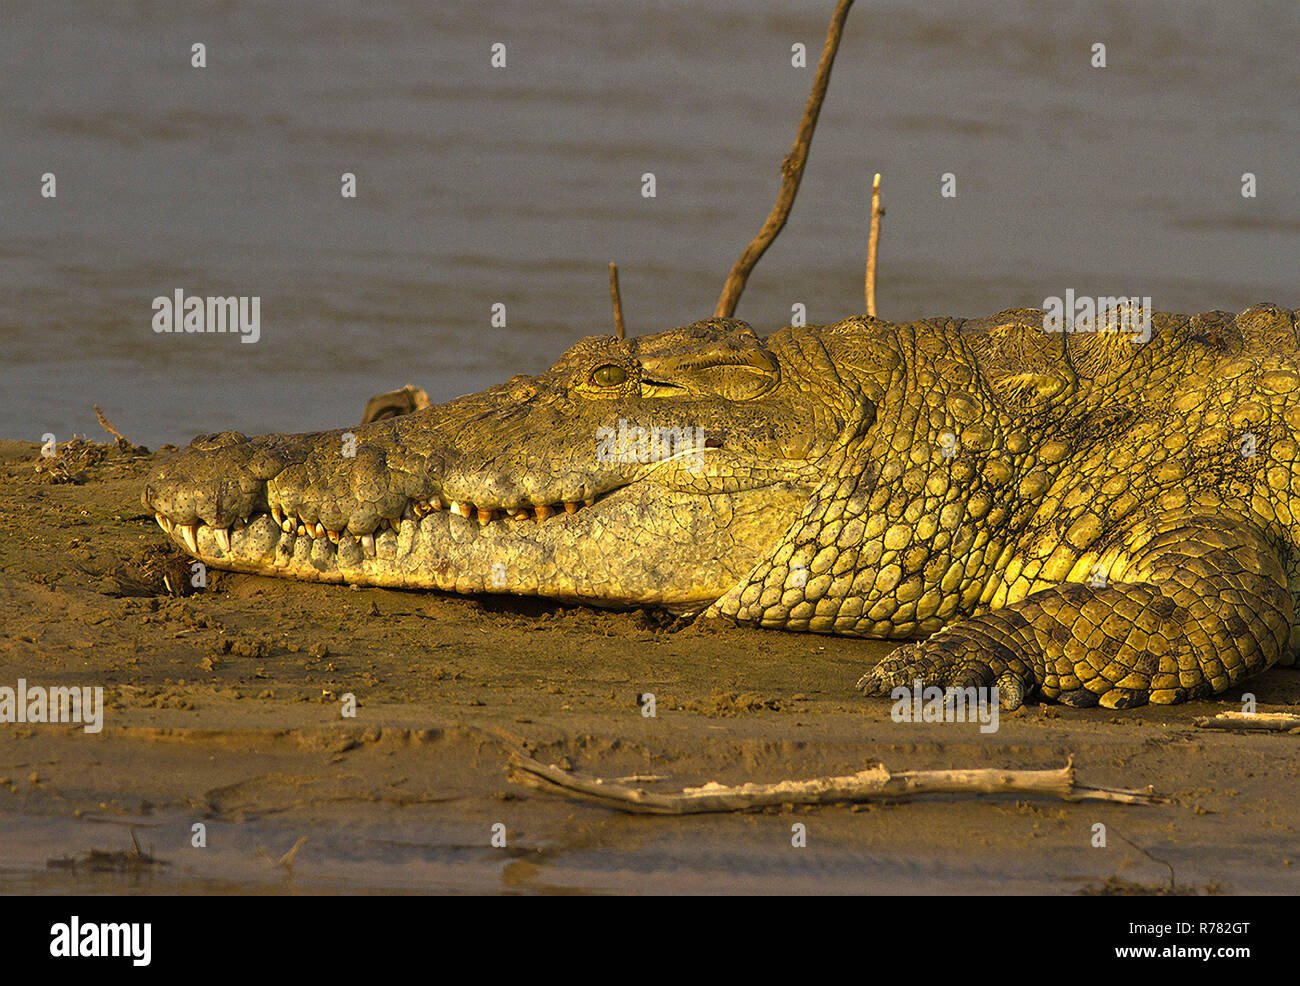 Un cocodrilo grande descansa a orillas del río Rufiji donde calienta el sol y gracias a adaptaciones como 4 septadas corazón Foto de stock